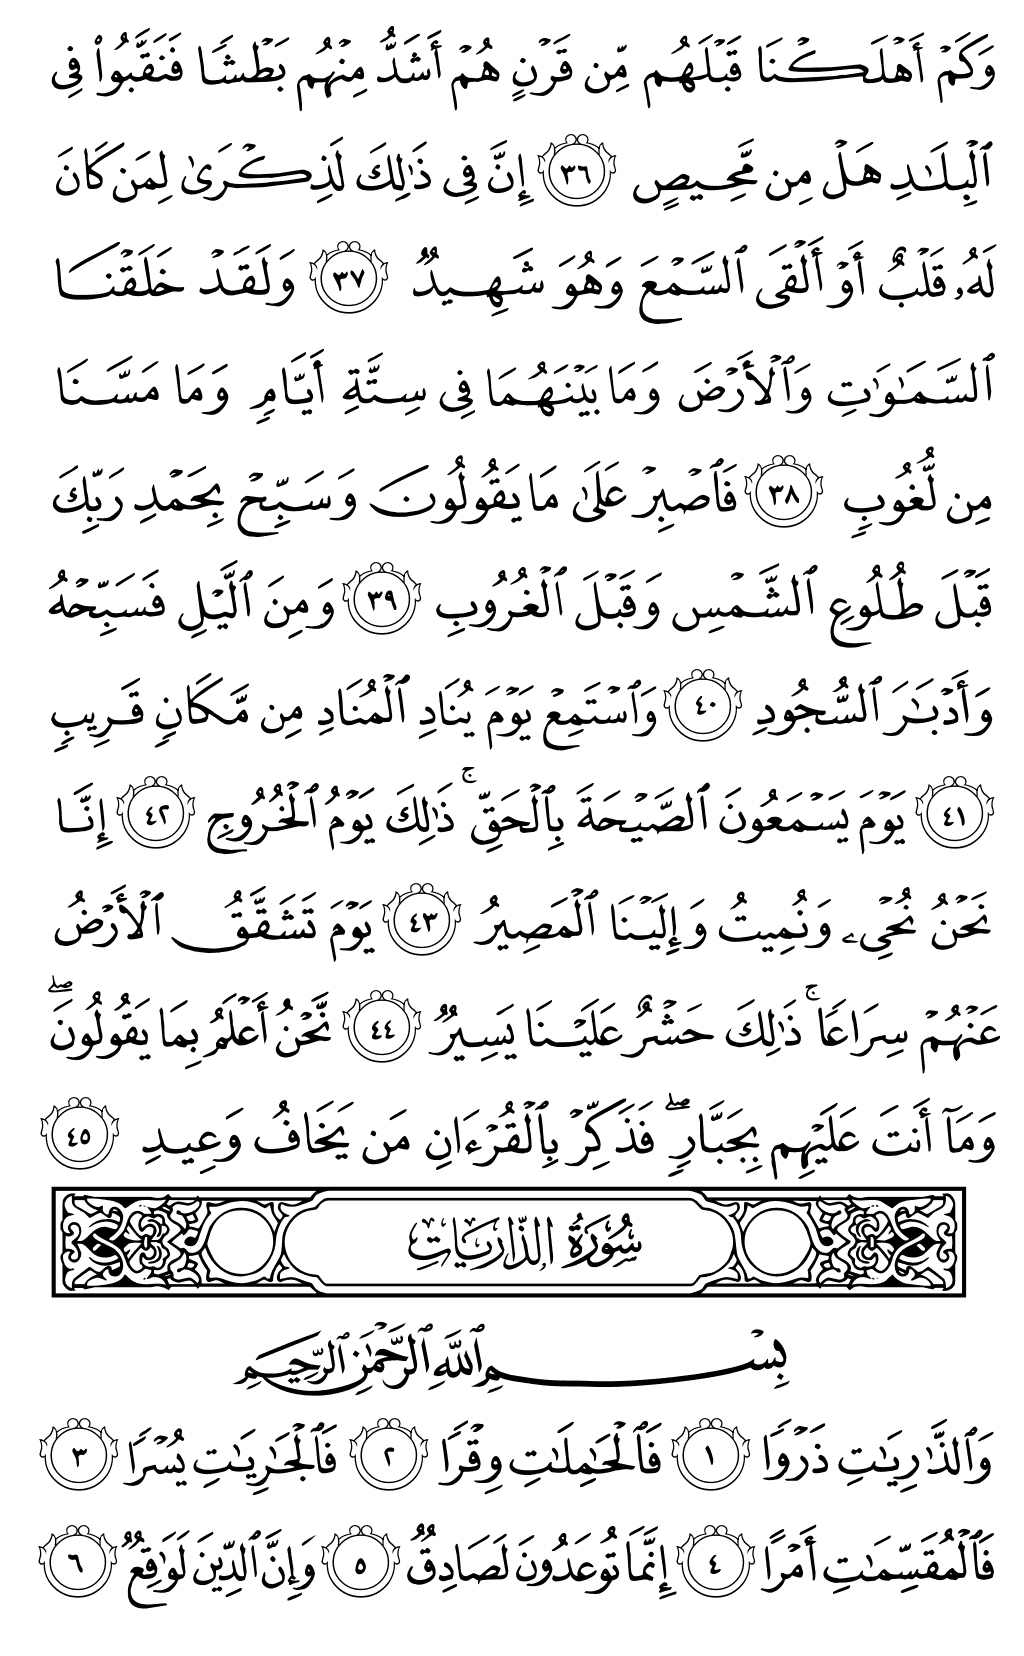 الصفحة رقم 520 من القرآن الكريم